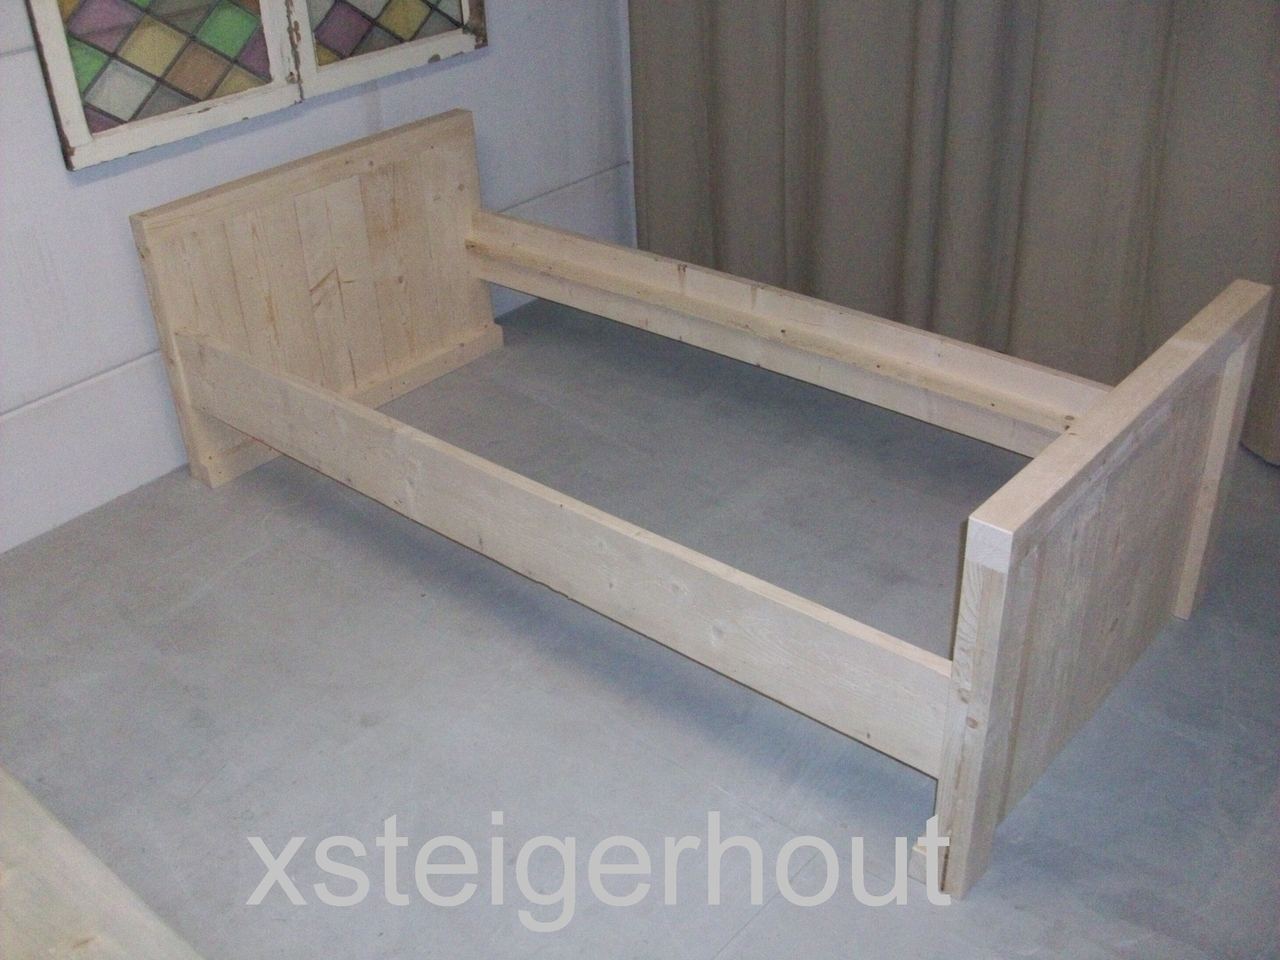 Bondgenoot Pigment Commissie Steigerhout bed bouwpakket - xsteigerhout